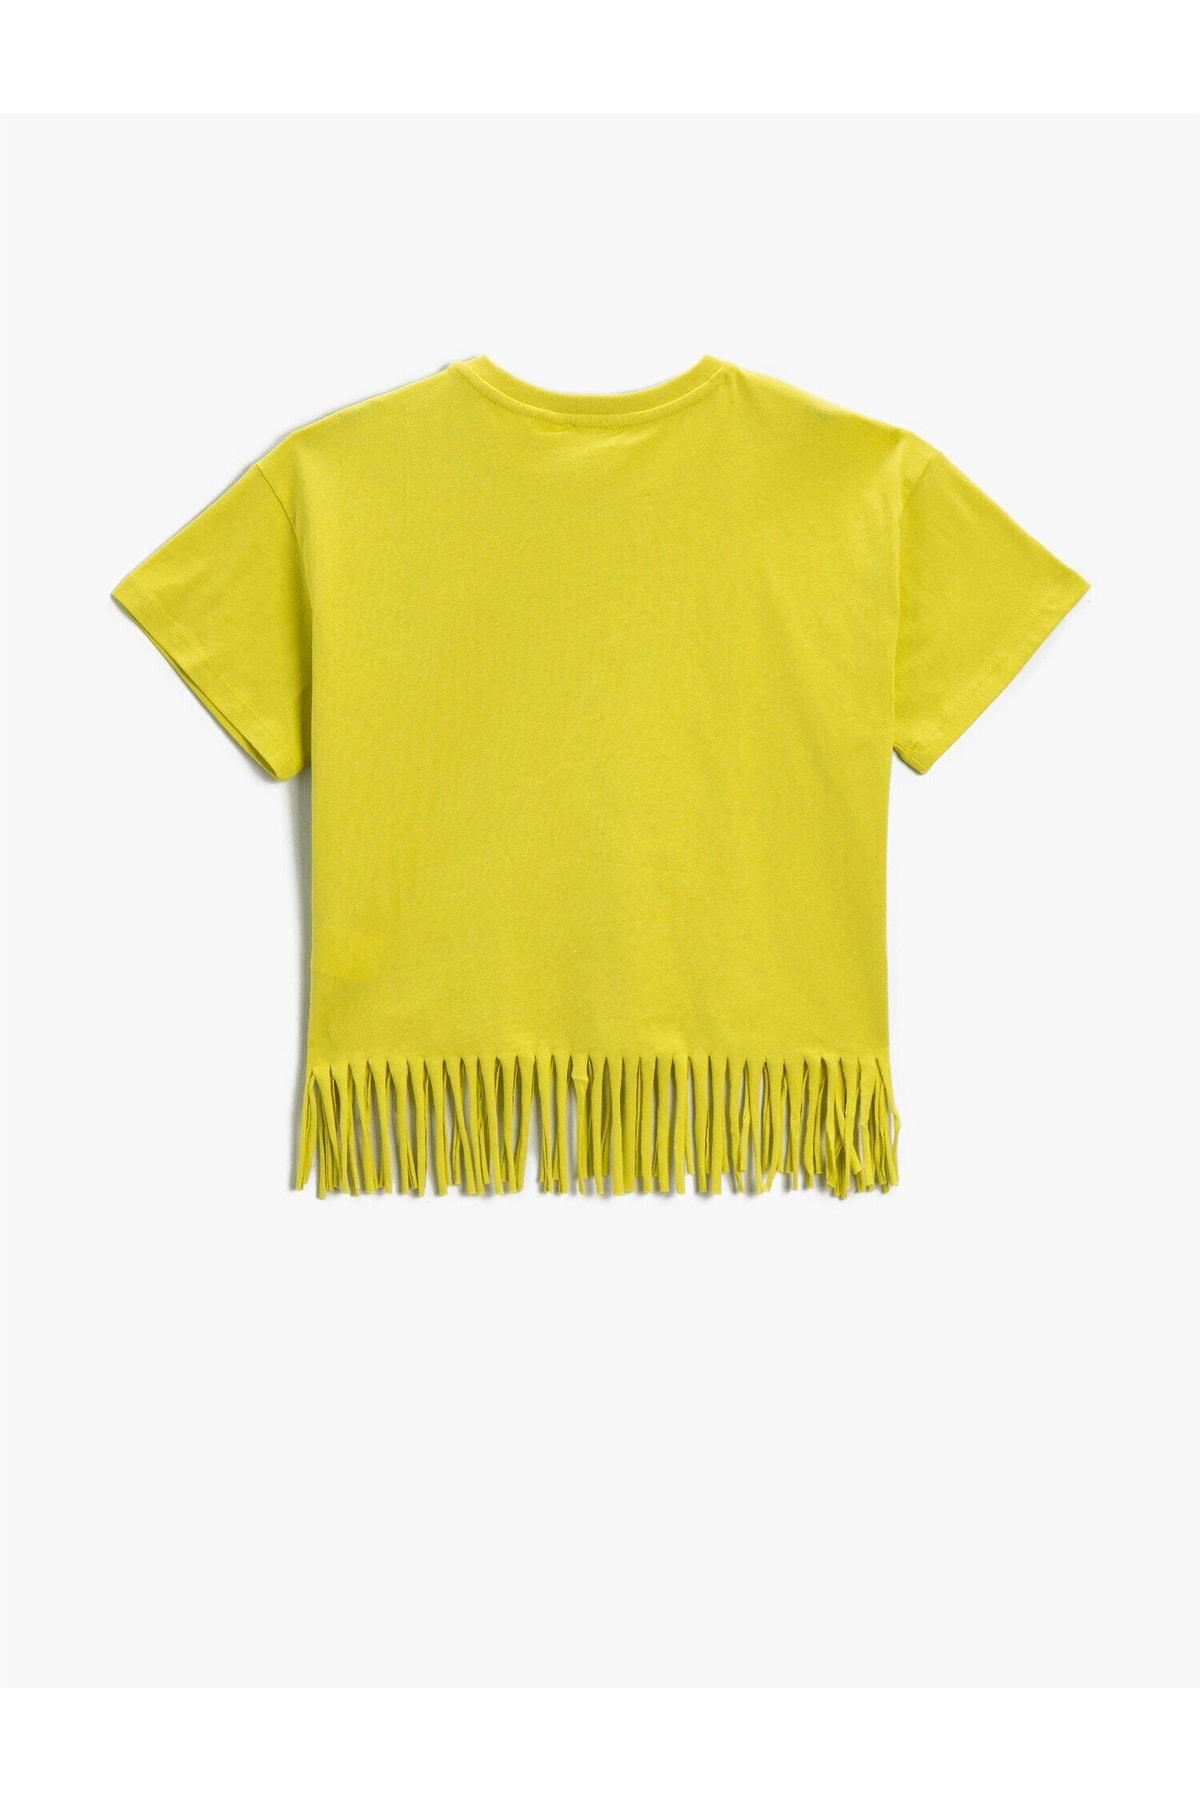 Koton - Yellow Crop T-Shirt, Kids Girls